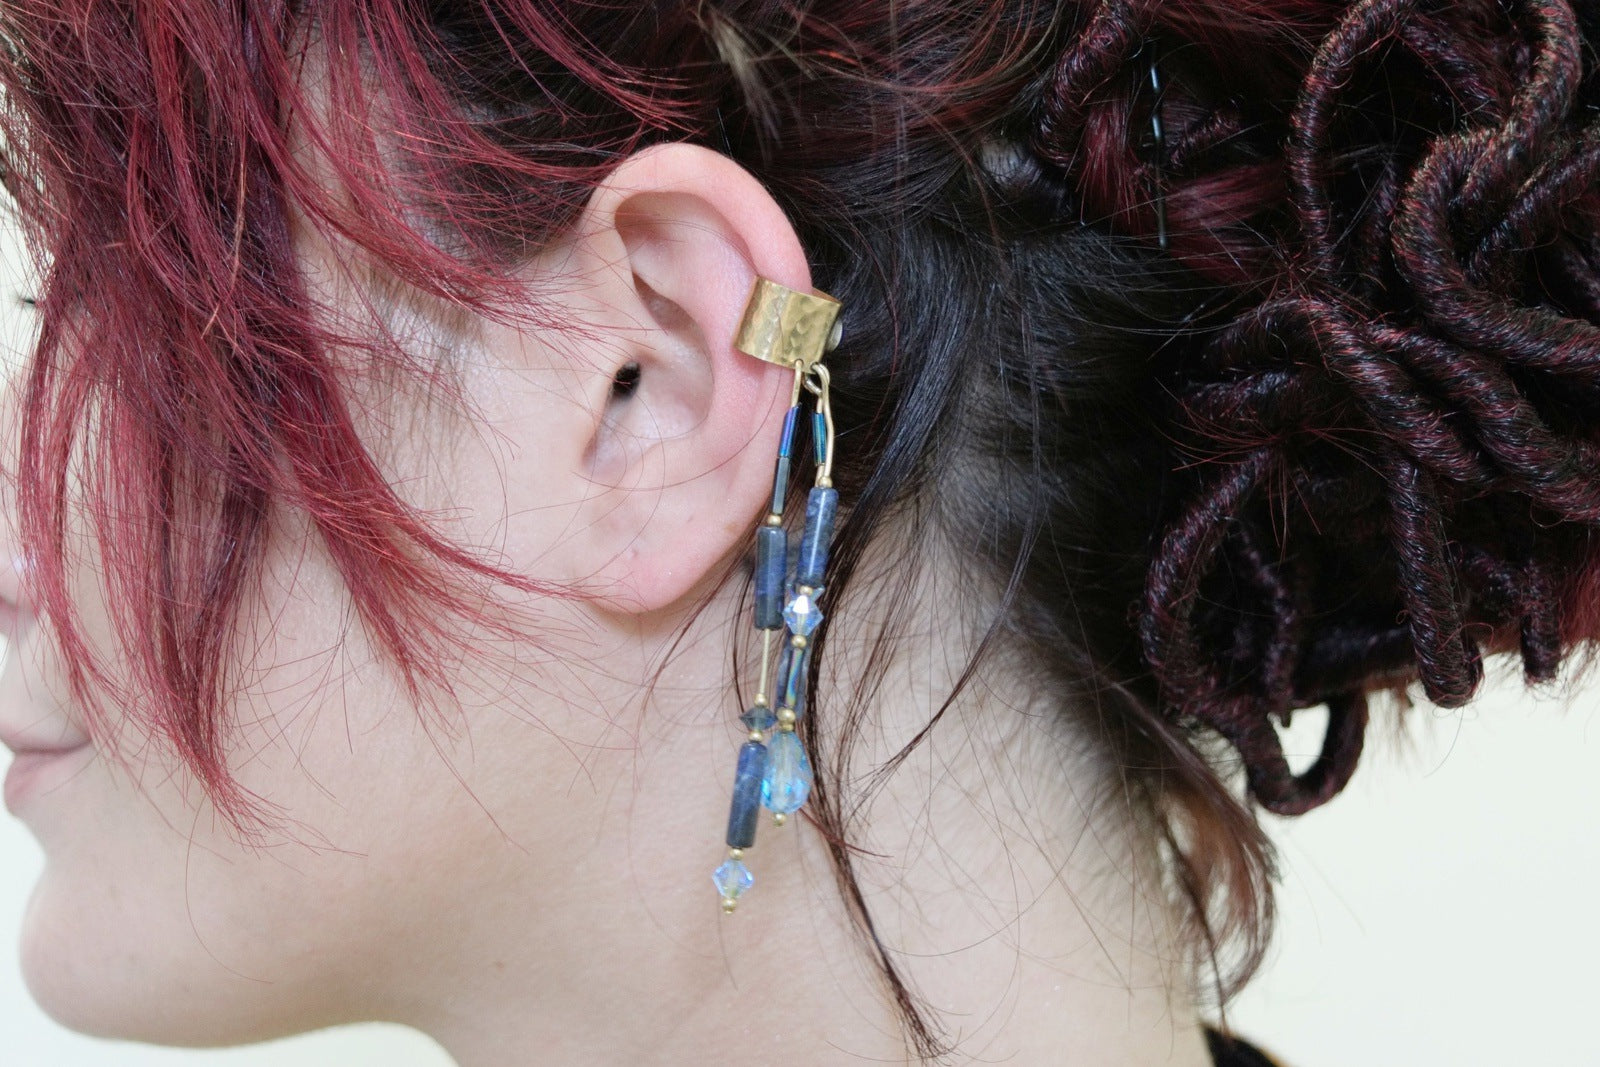 Lapis Lazuli Golden Ear Cuff Single Earrings Vintage Jewelry